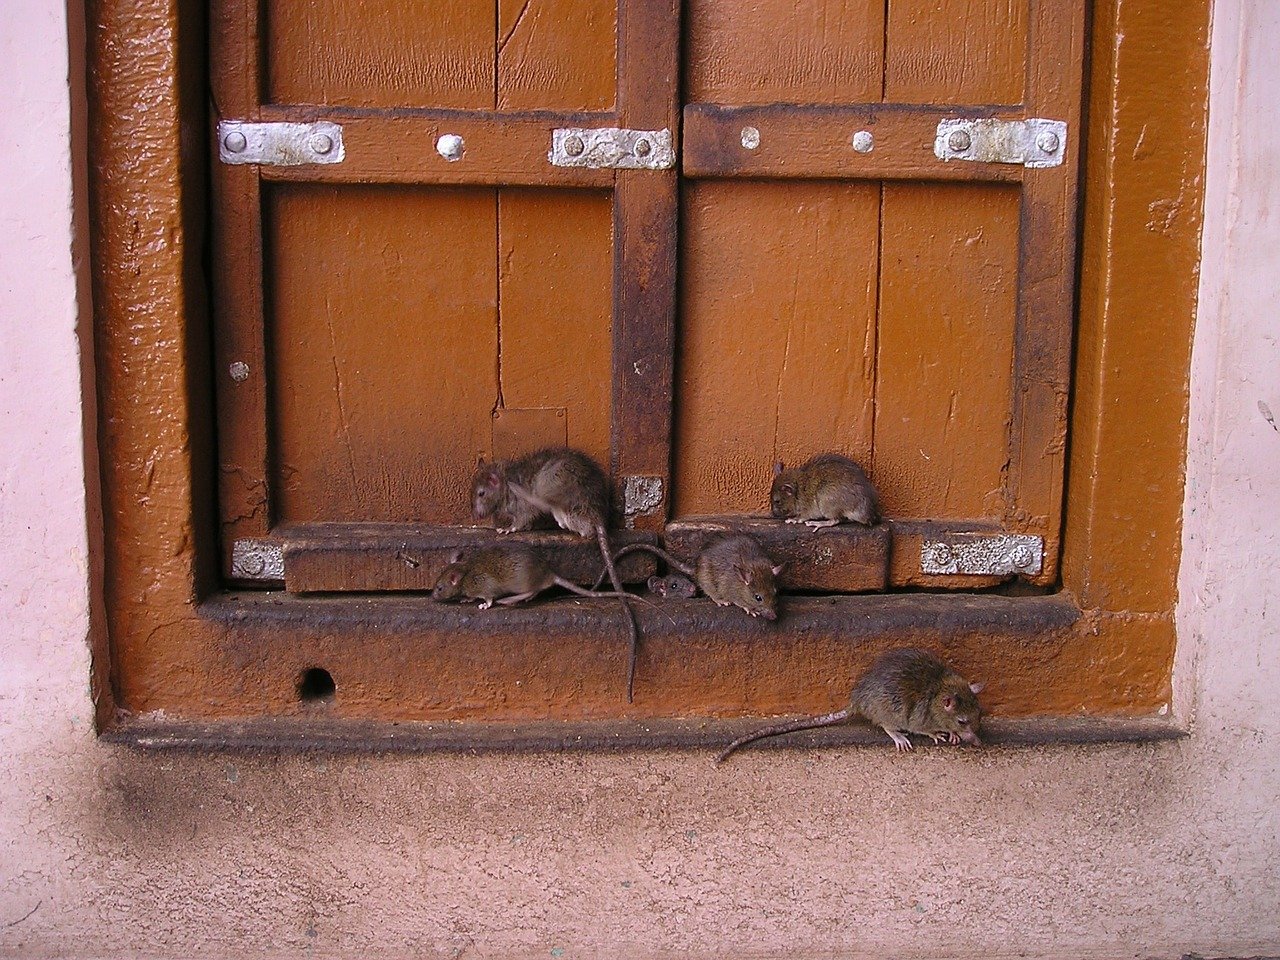 Ratten können gefährliche Viren übertragen. Foto Simon via pixabay